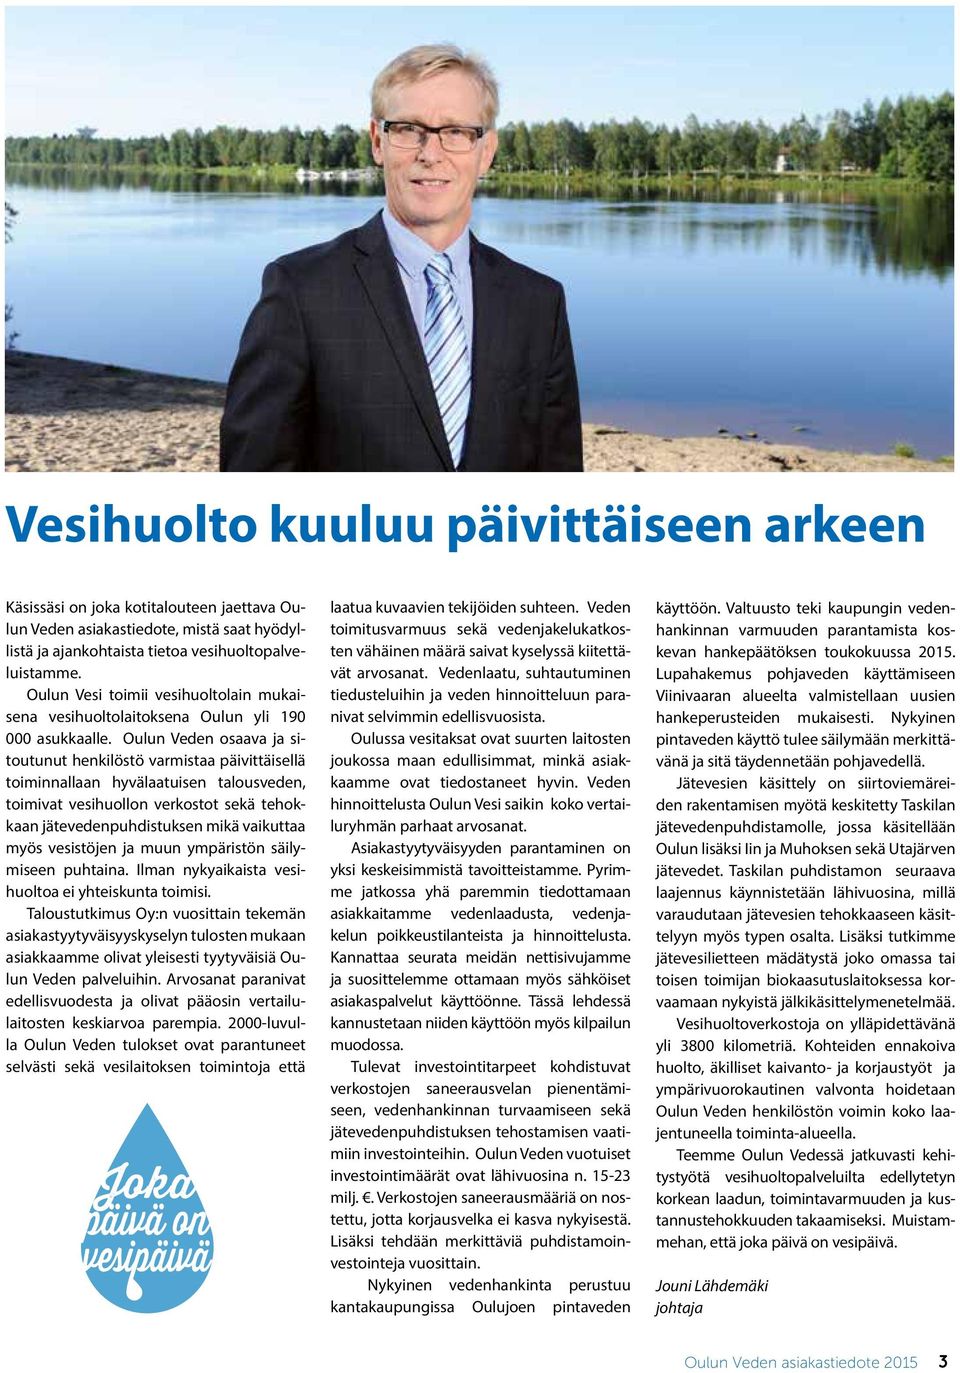 Oulun Veden osaava ja sitoutunut henkilöstö varmistaa päivittäisellä toiminnallaan hyvälaatuisen talousveden, toimivat vesihuollon verkostot sekä tehokkaan jätevedenpuhdistuksen mikä vaikuttaa myös